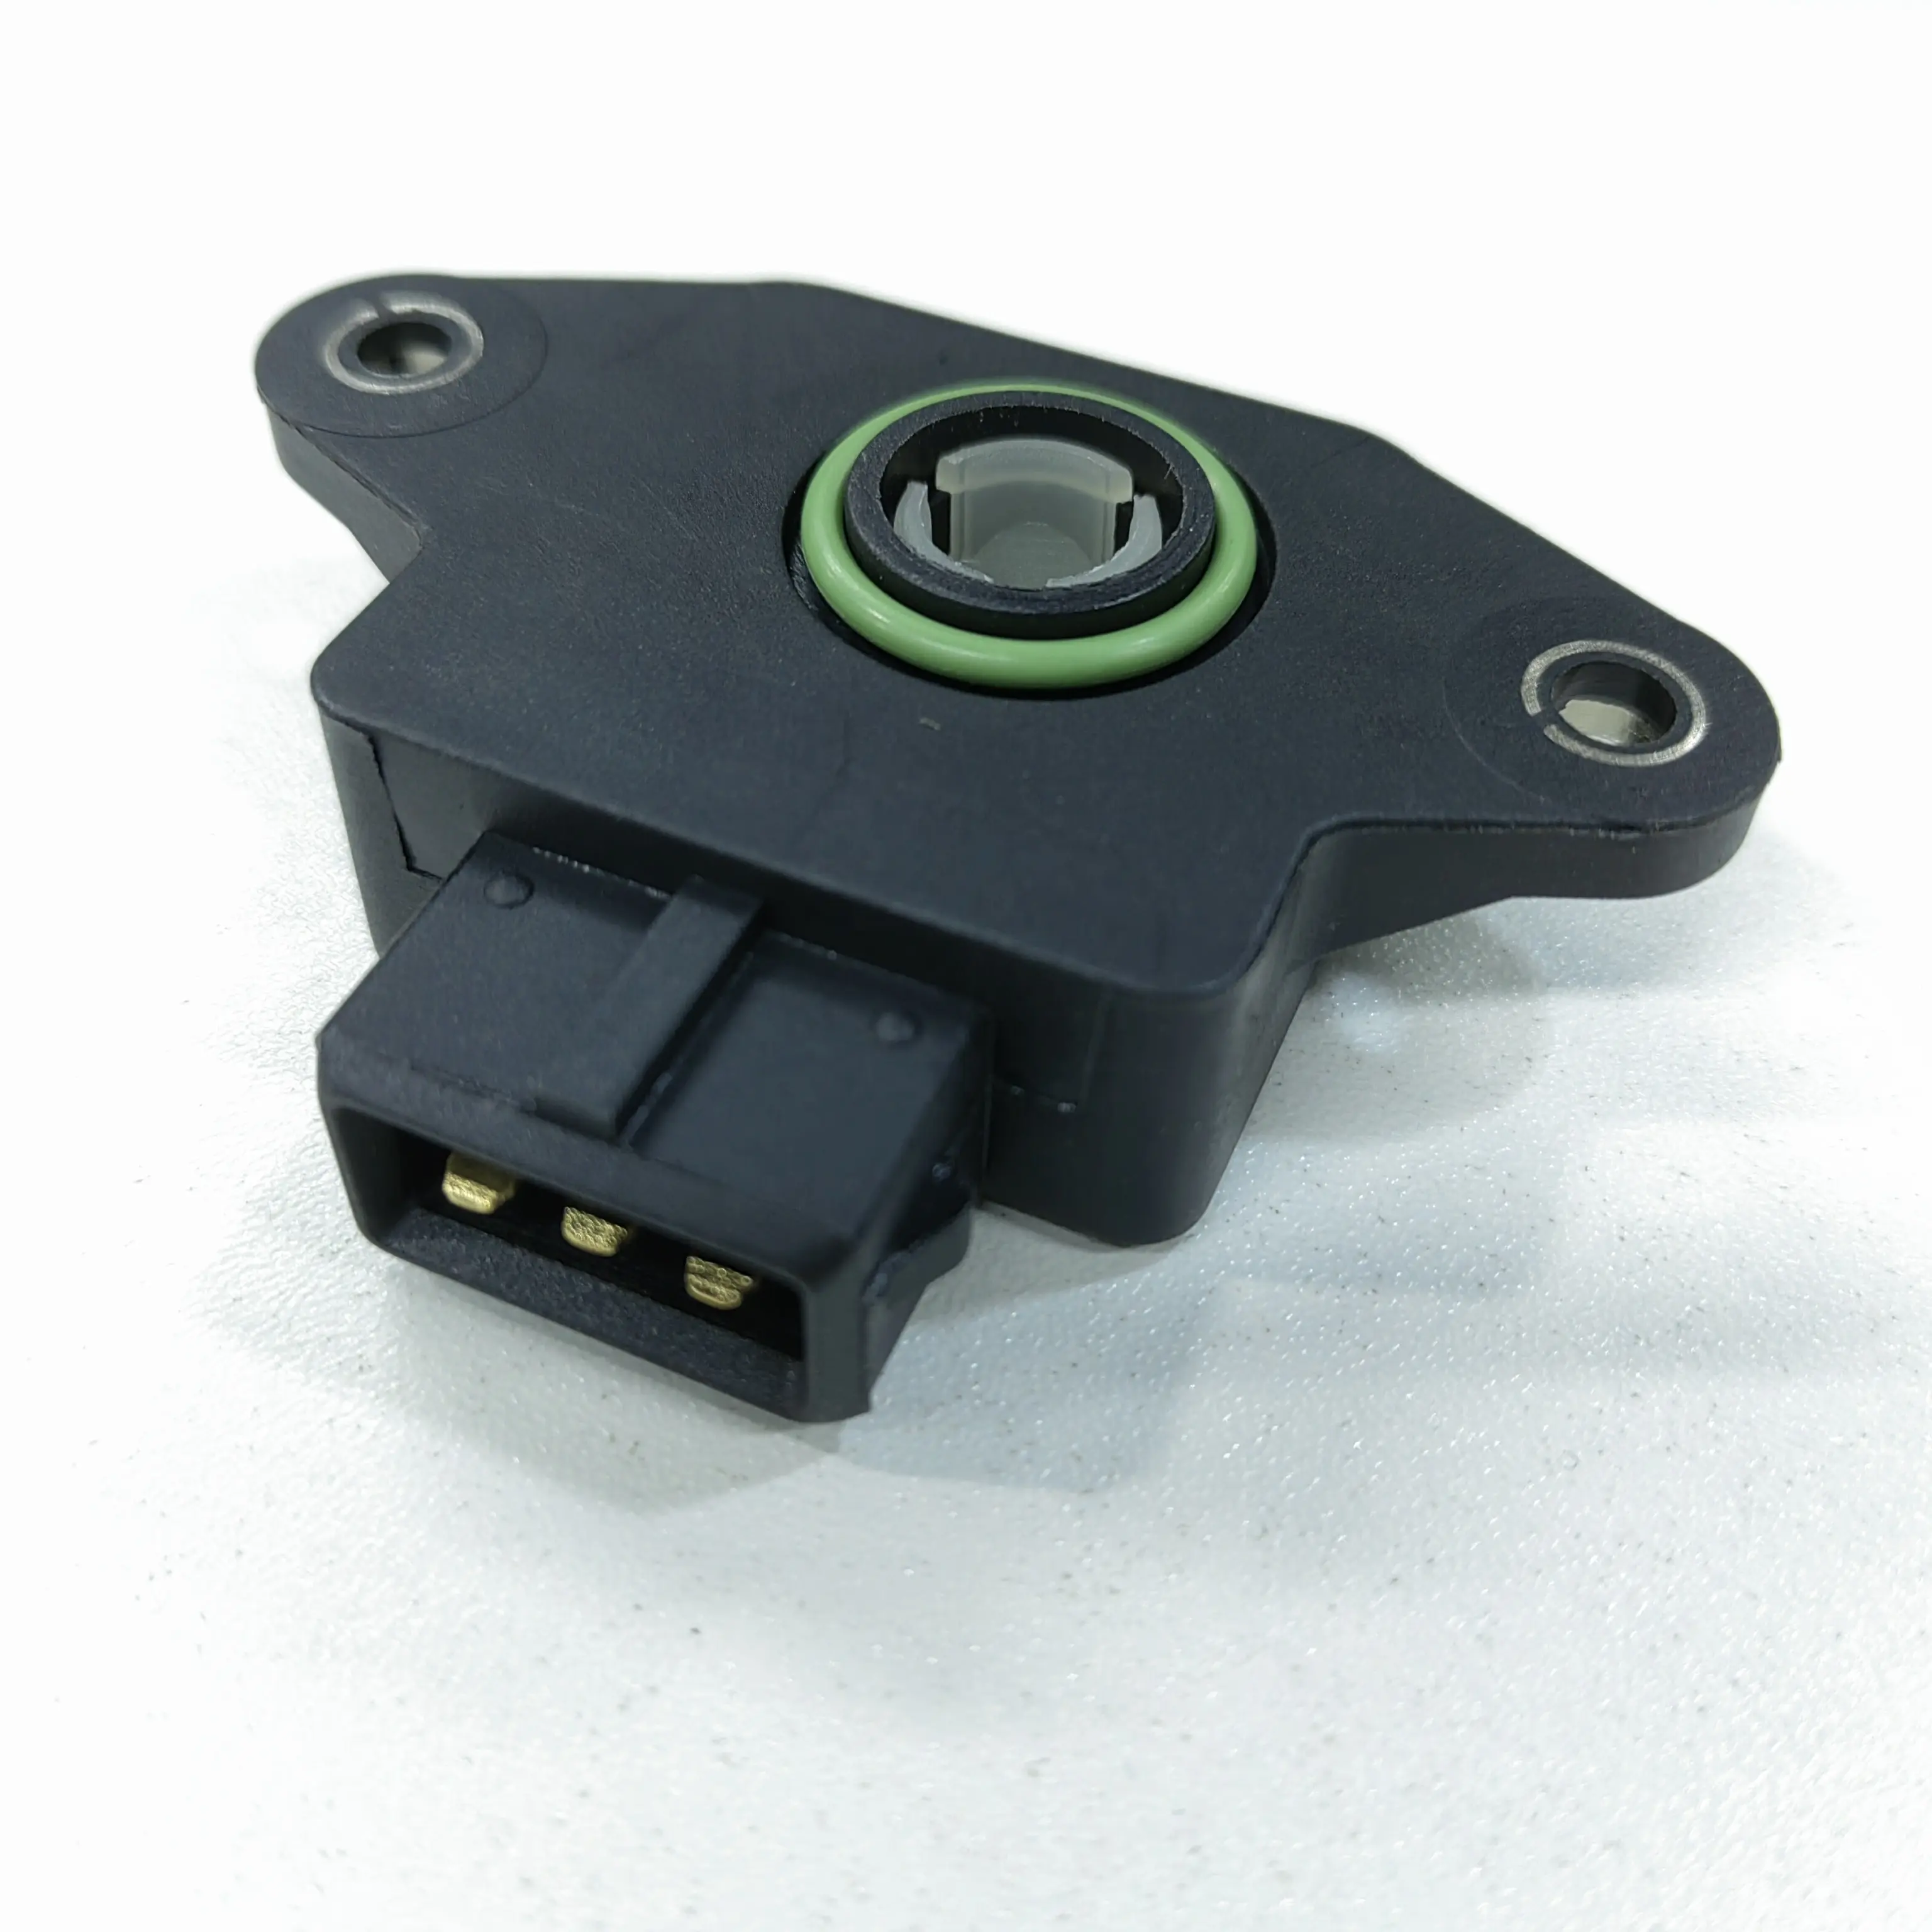 OE 35170-22010 oto parçası gaz kelebeği konum sensörü Hyundai ACCENT COUPE LANTRA II S COUPE için Fit (SLC) 1.3 1.5 1.6 sensörler Tps